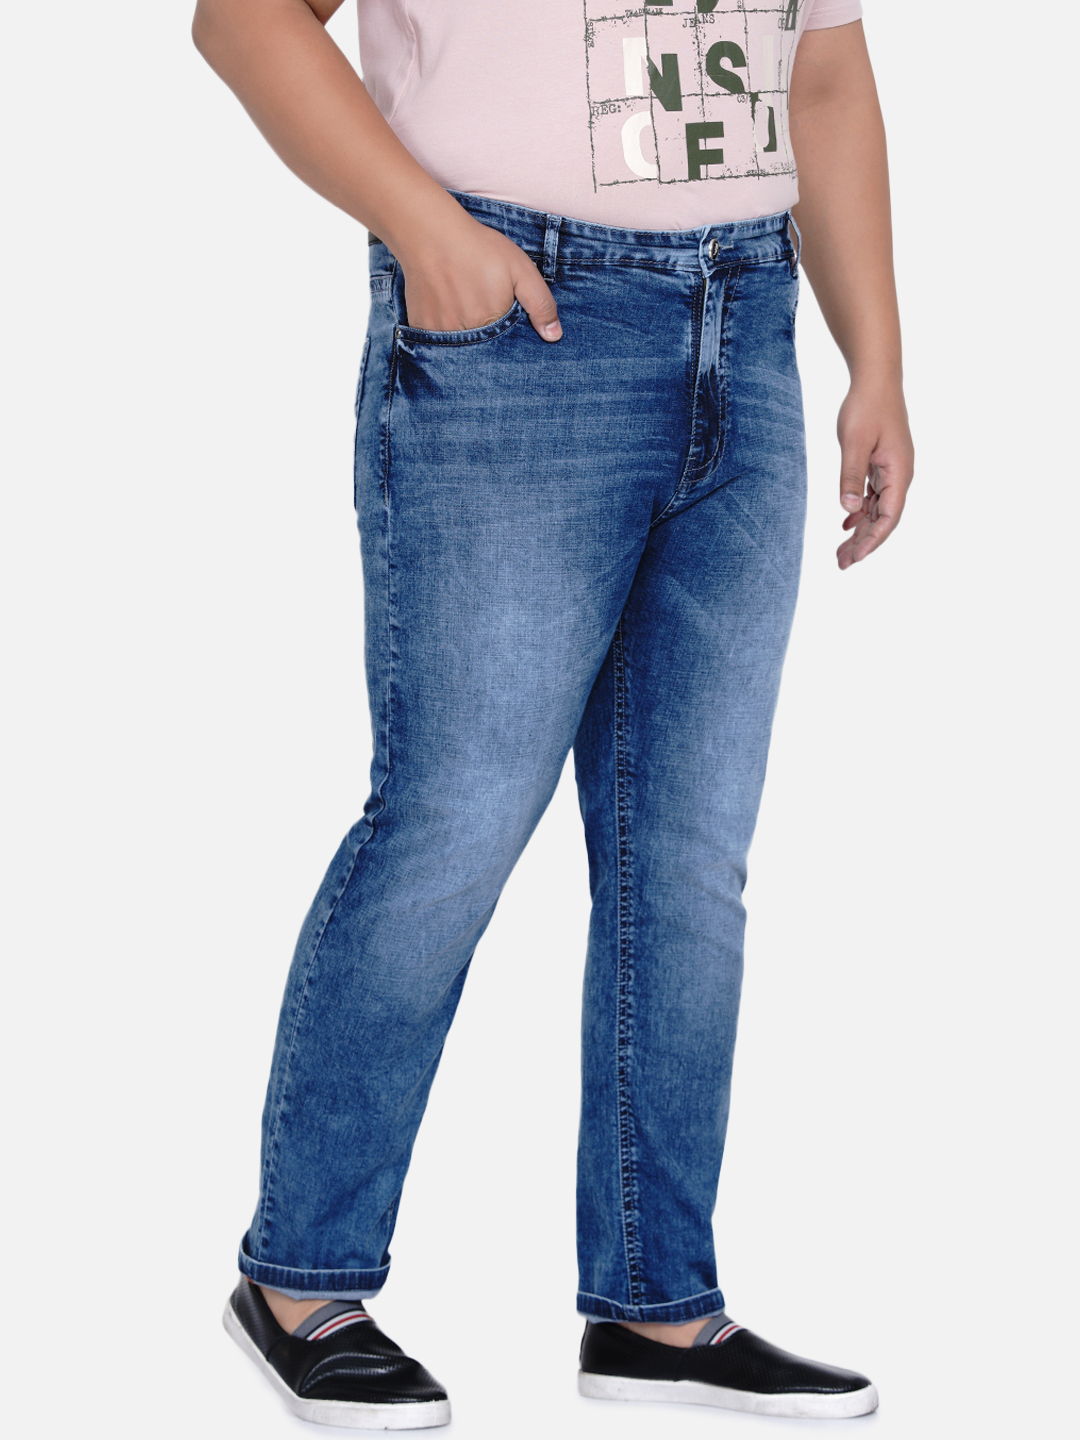 bottomwear/jeans/JPJ6034/jpj6034-3.jpg